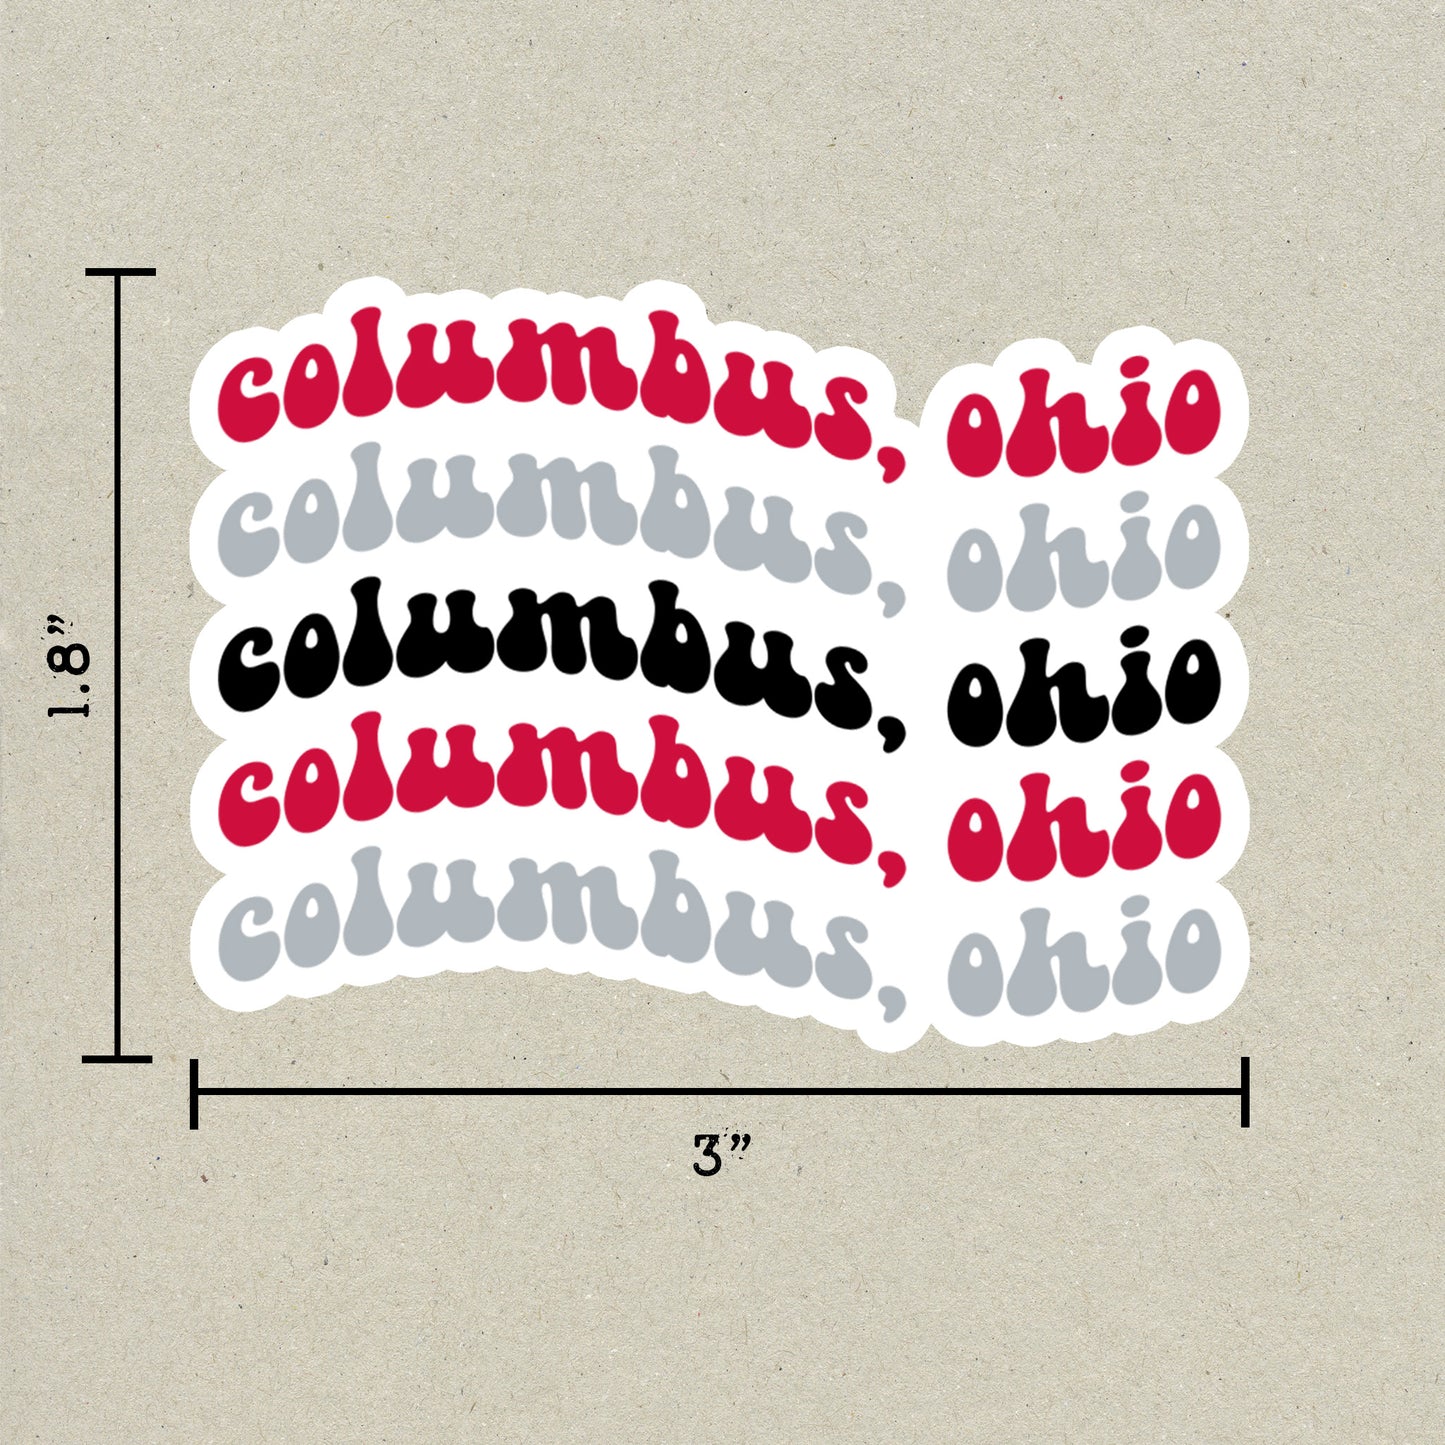 Columbus, Ohio College Town Sticker